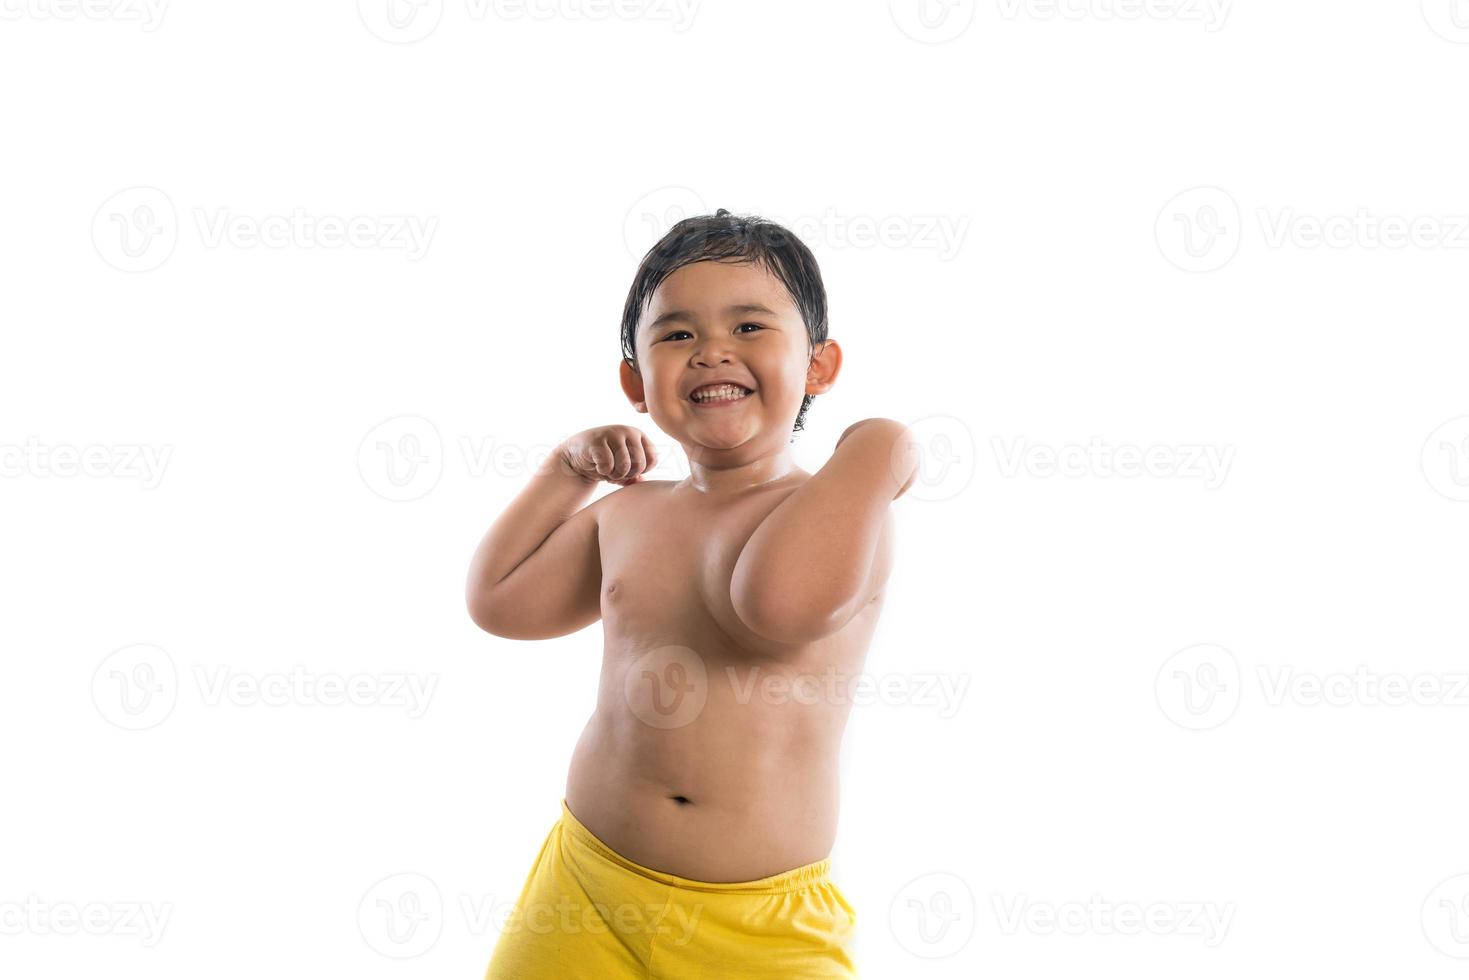 menino engraçado mostrando músculos fortes isolados no fundo branco foto